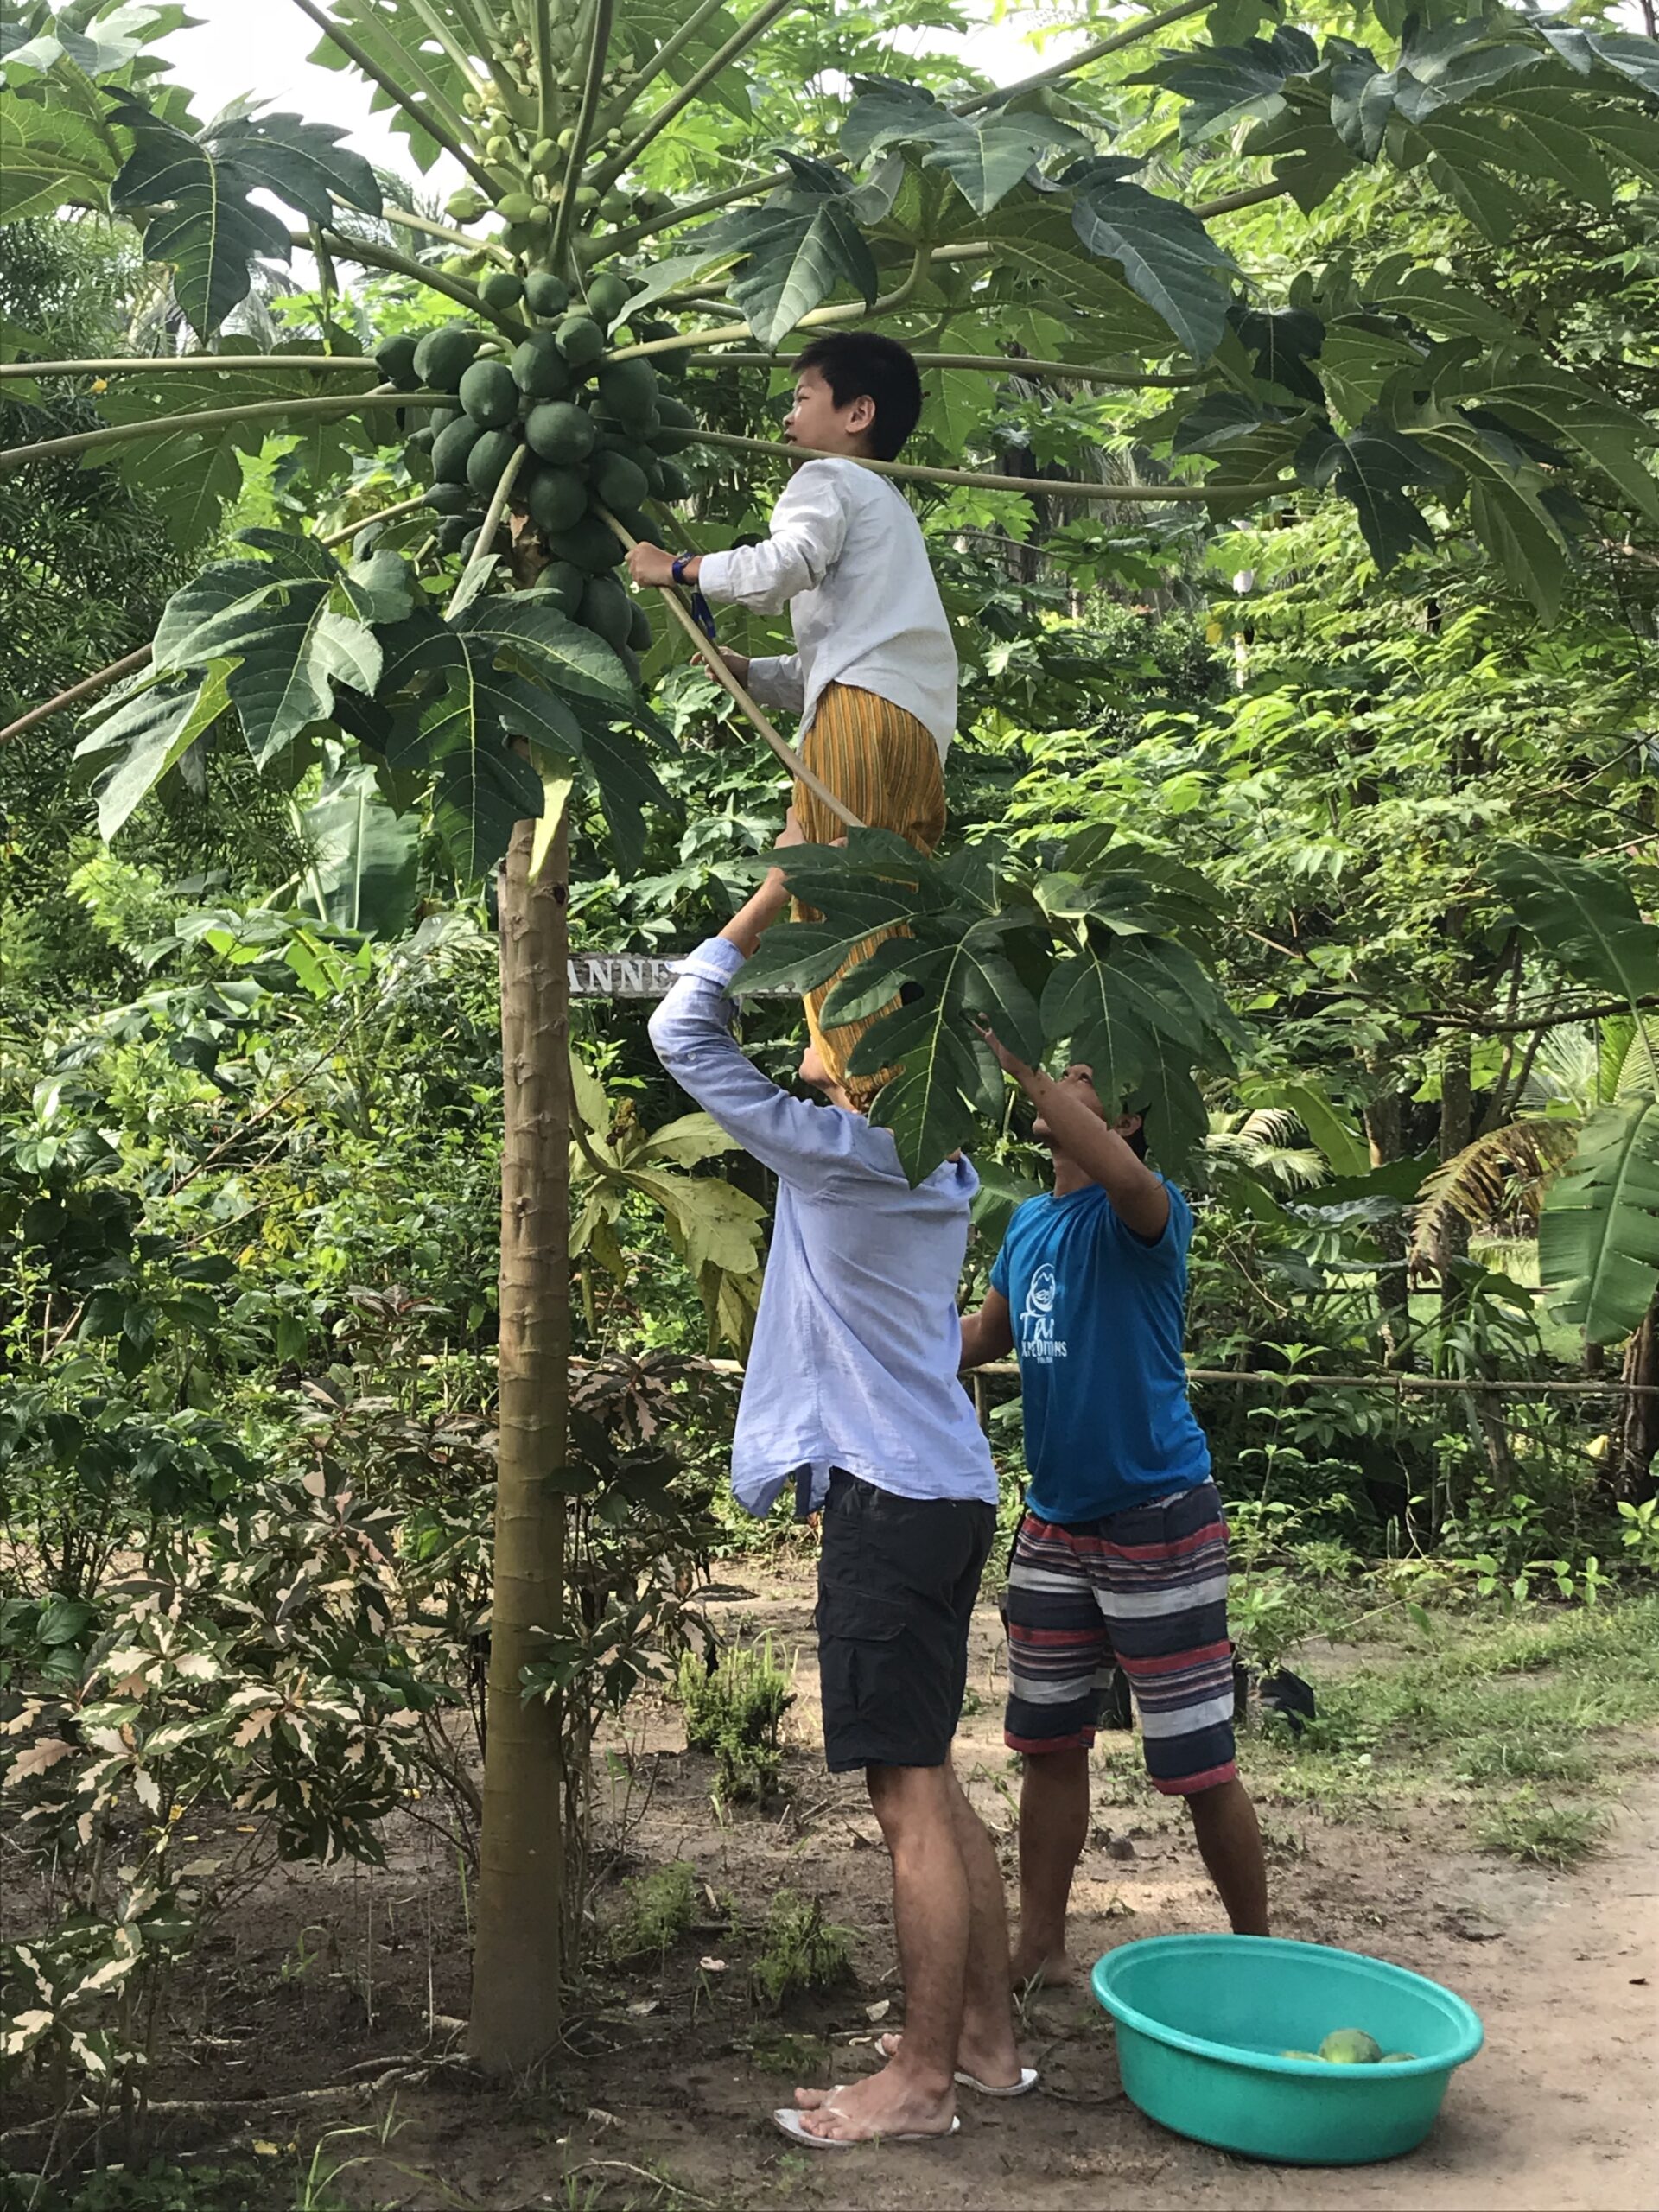 Picking papayas